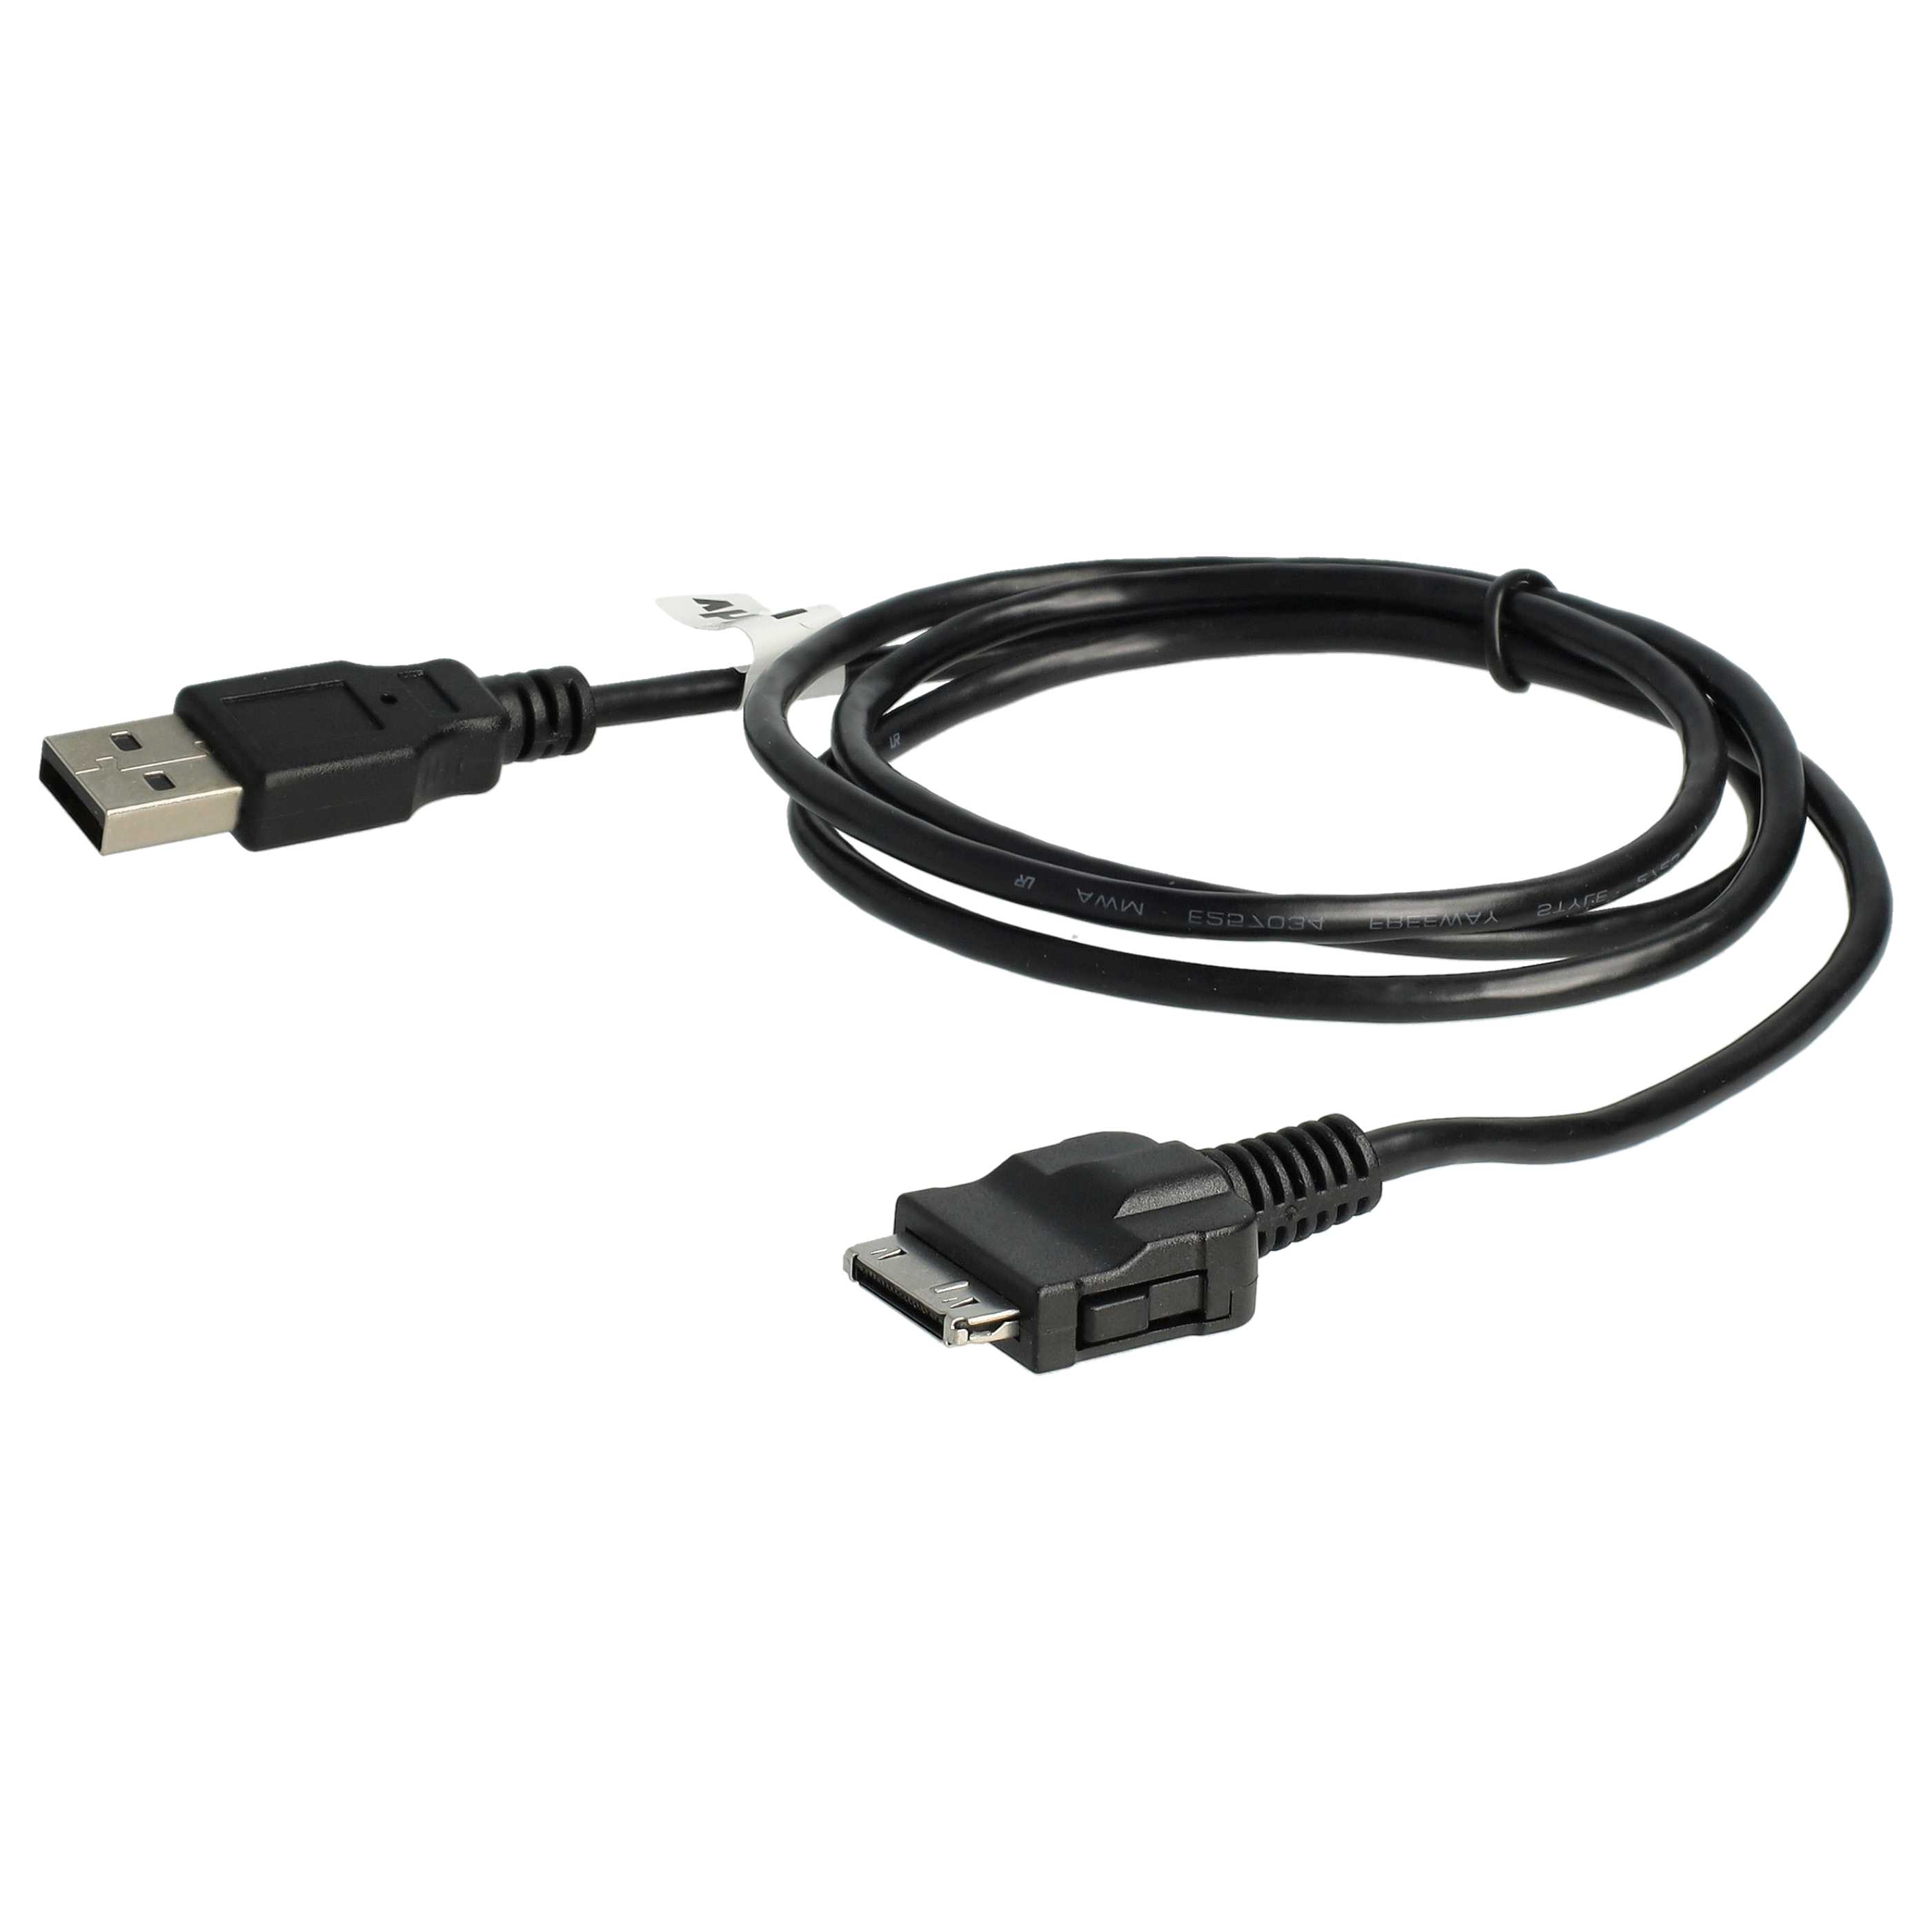 Câble USB de données pour lecteur MP3 Iriver H10 1GB et autres, 100 cm